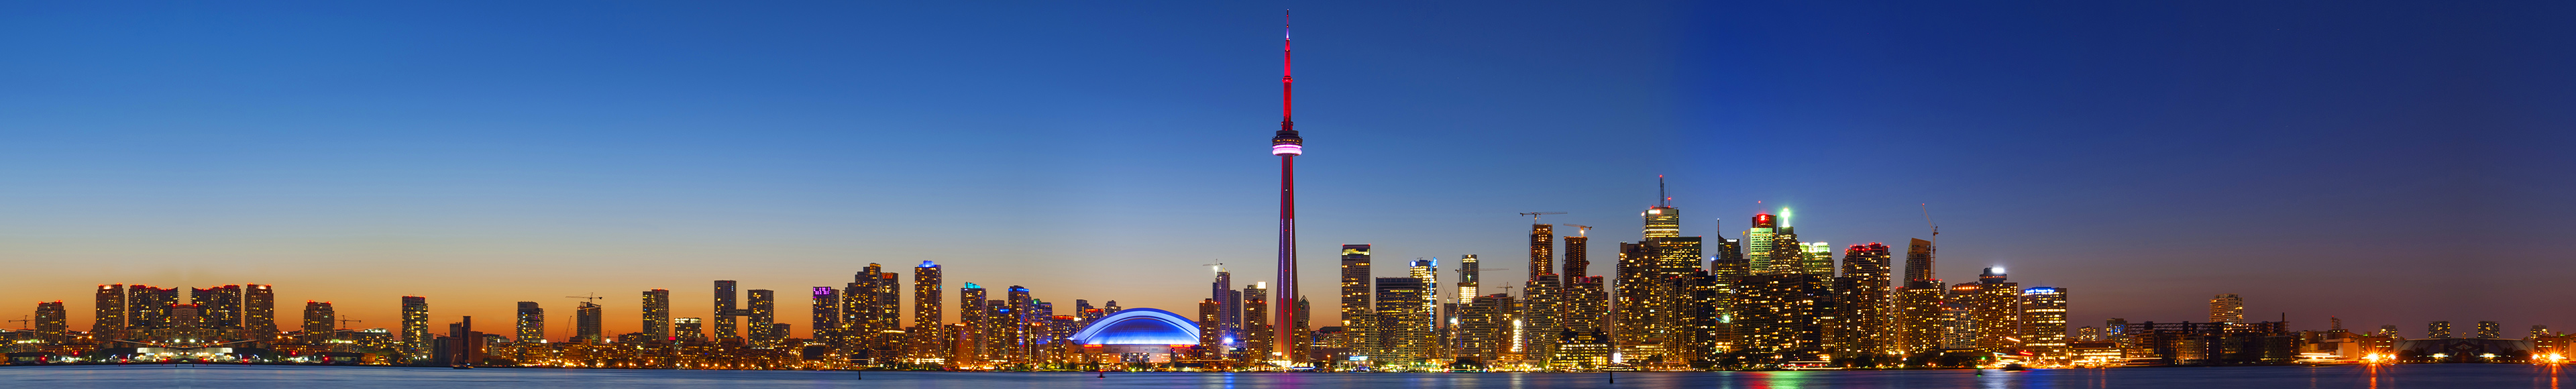 Image of Toronto night skyline